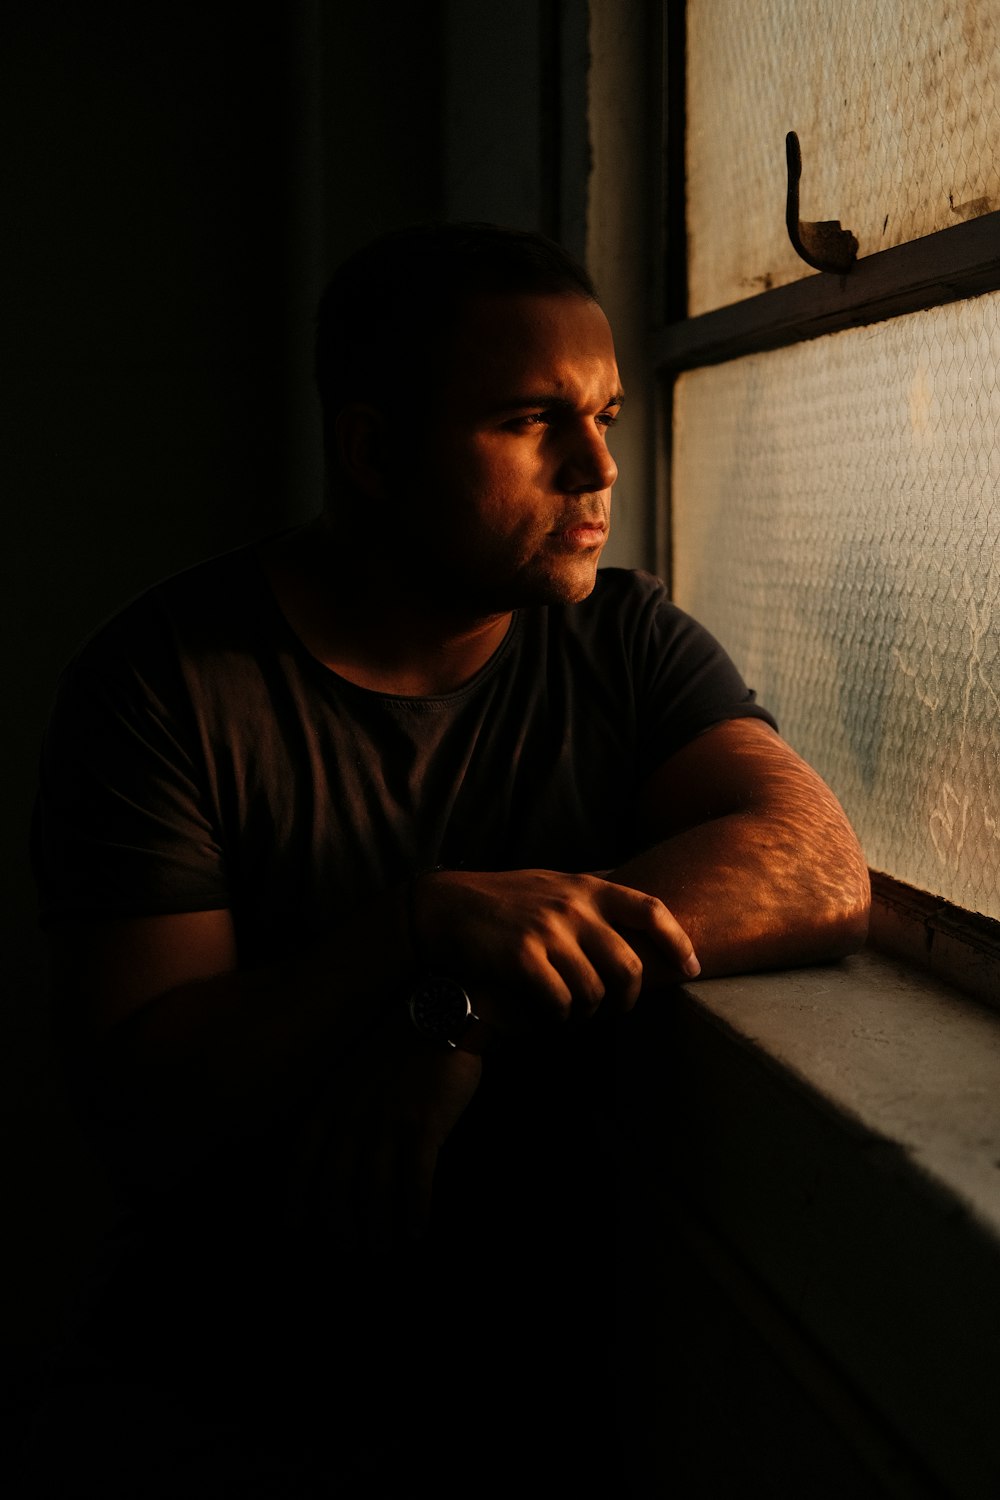 Un homme regardant par une fenêtre dans le noir